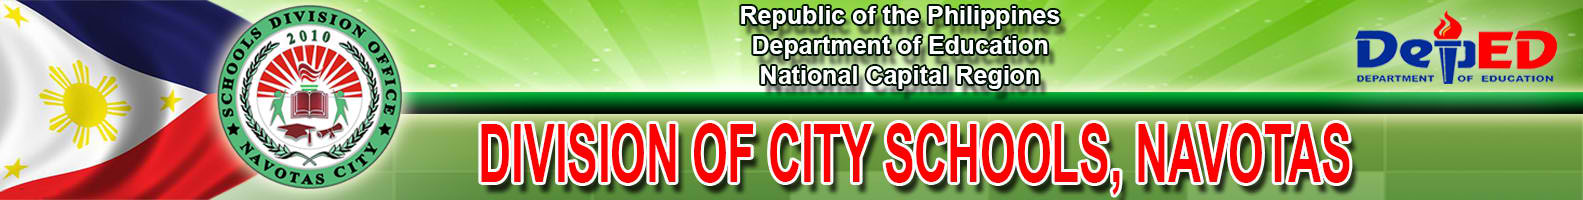 Division of City Schools Navotas